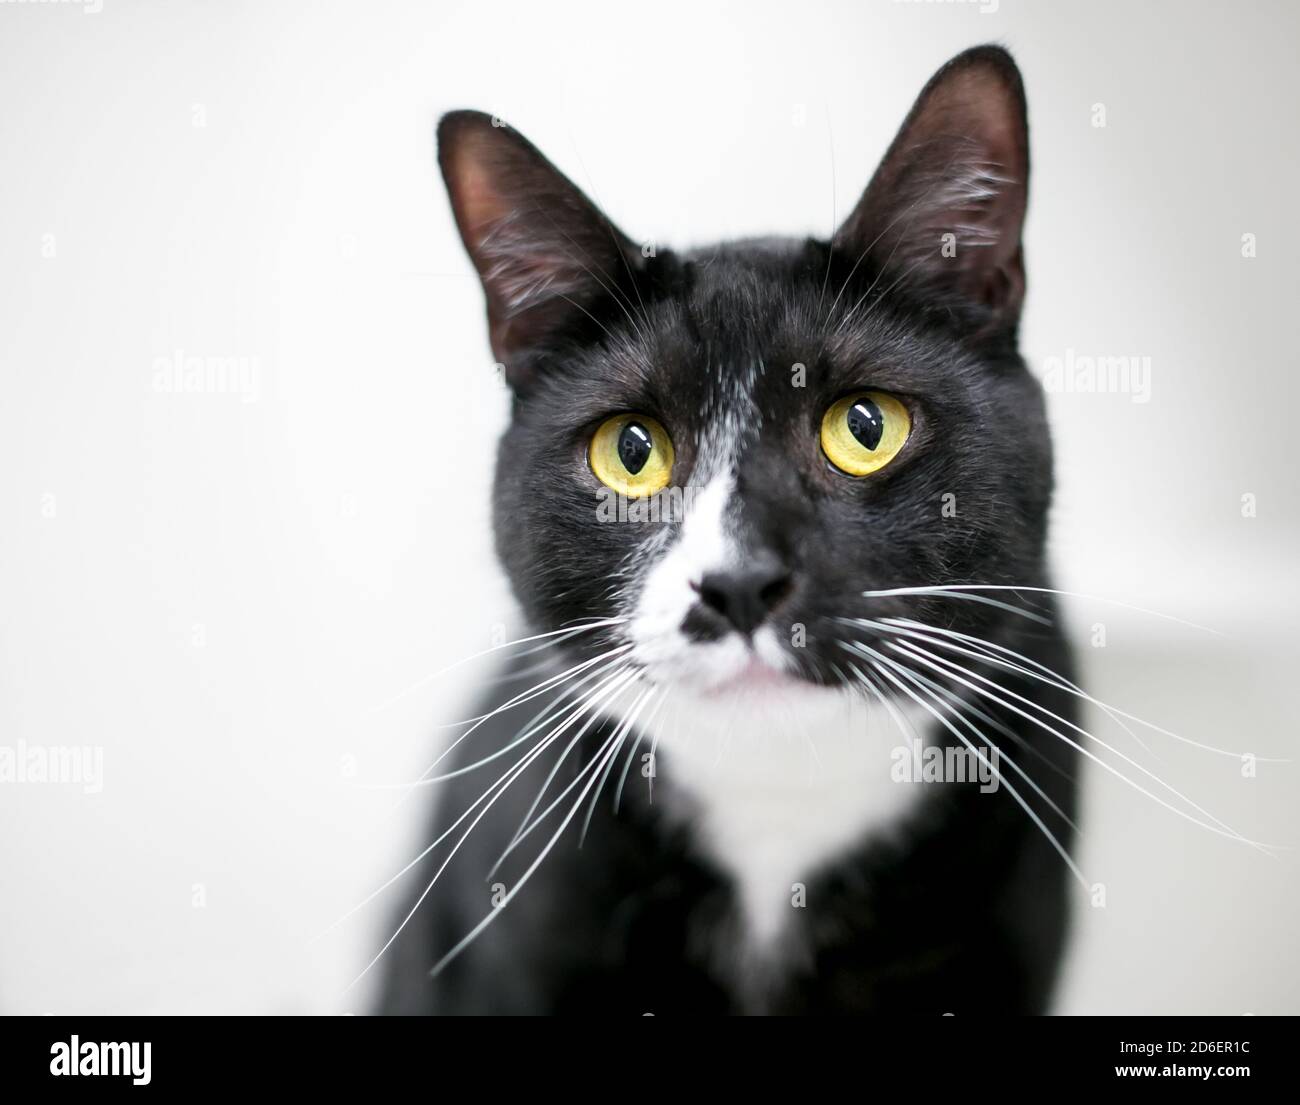 Un chat de Tuxedo noir et blanc avec des yeux jaunes et de longs whiskers Banque D'Images